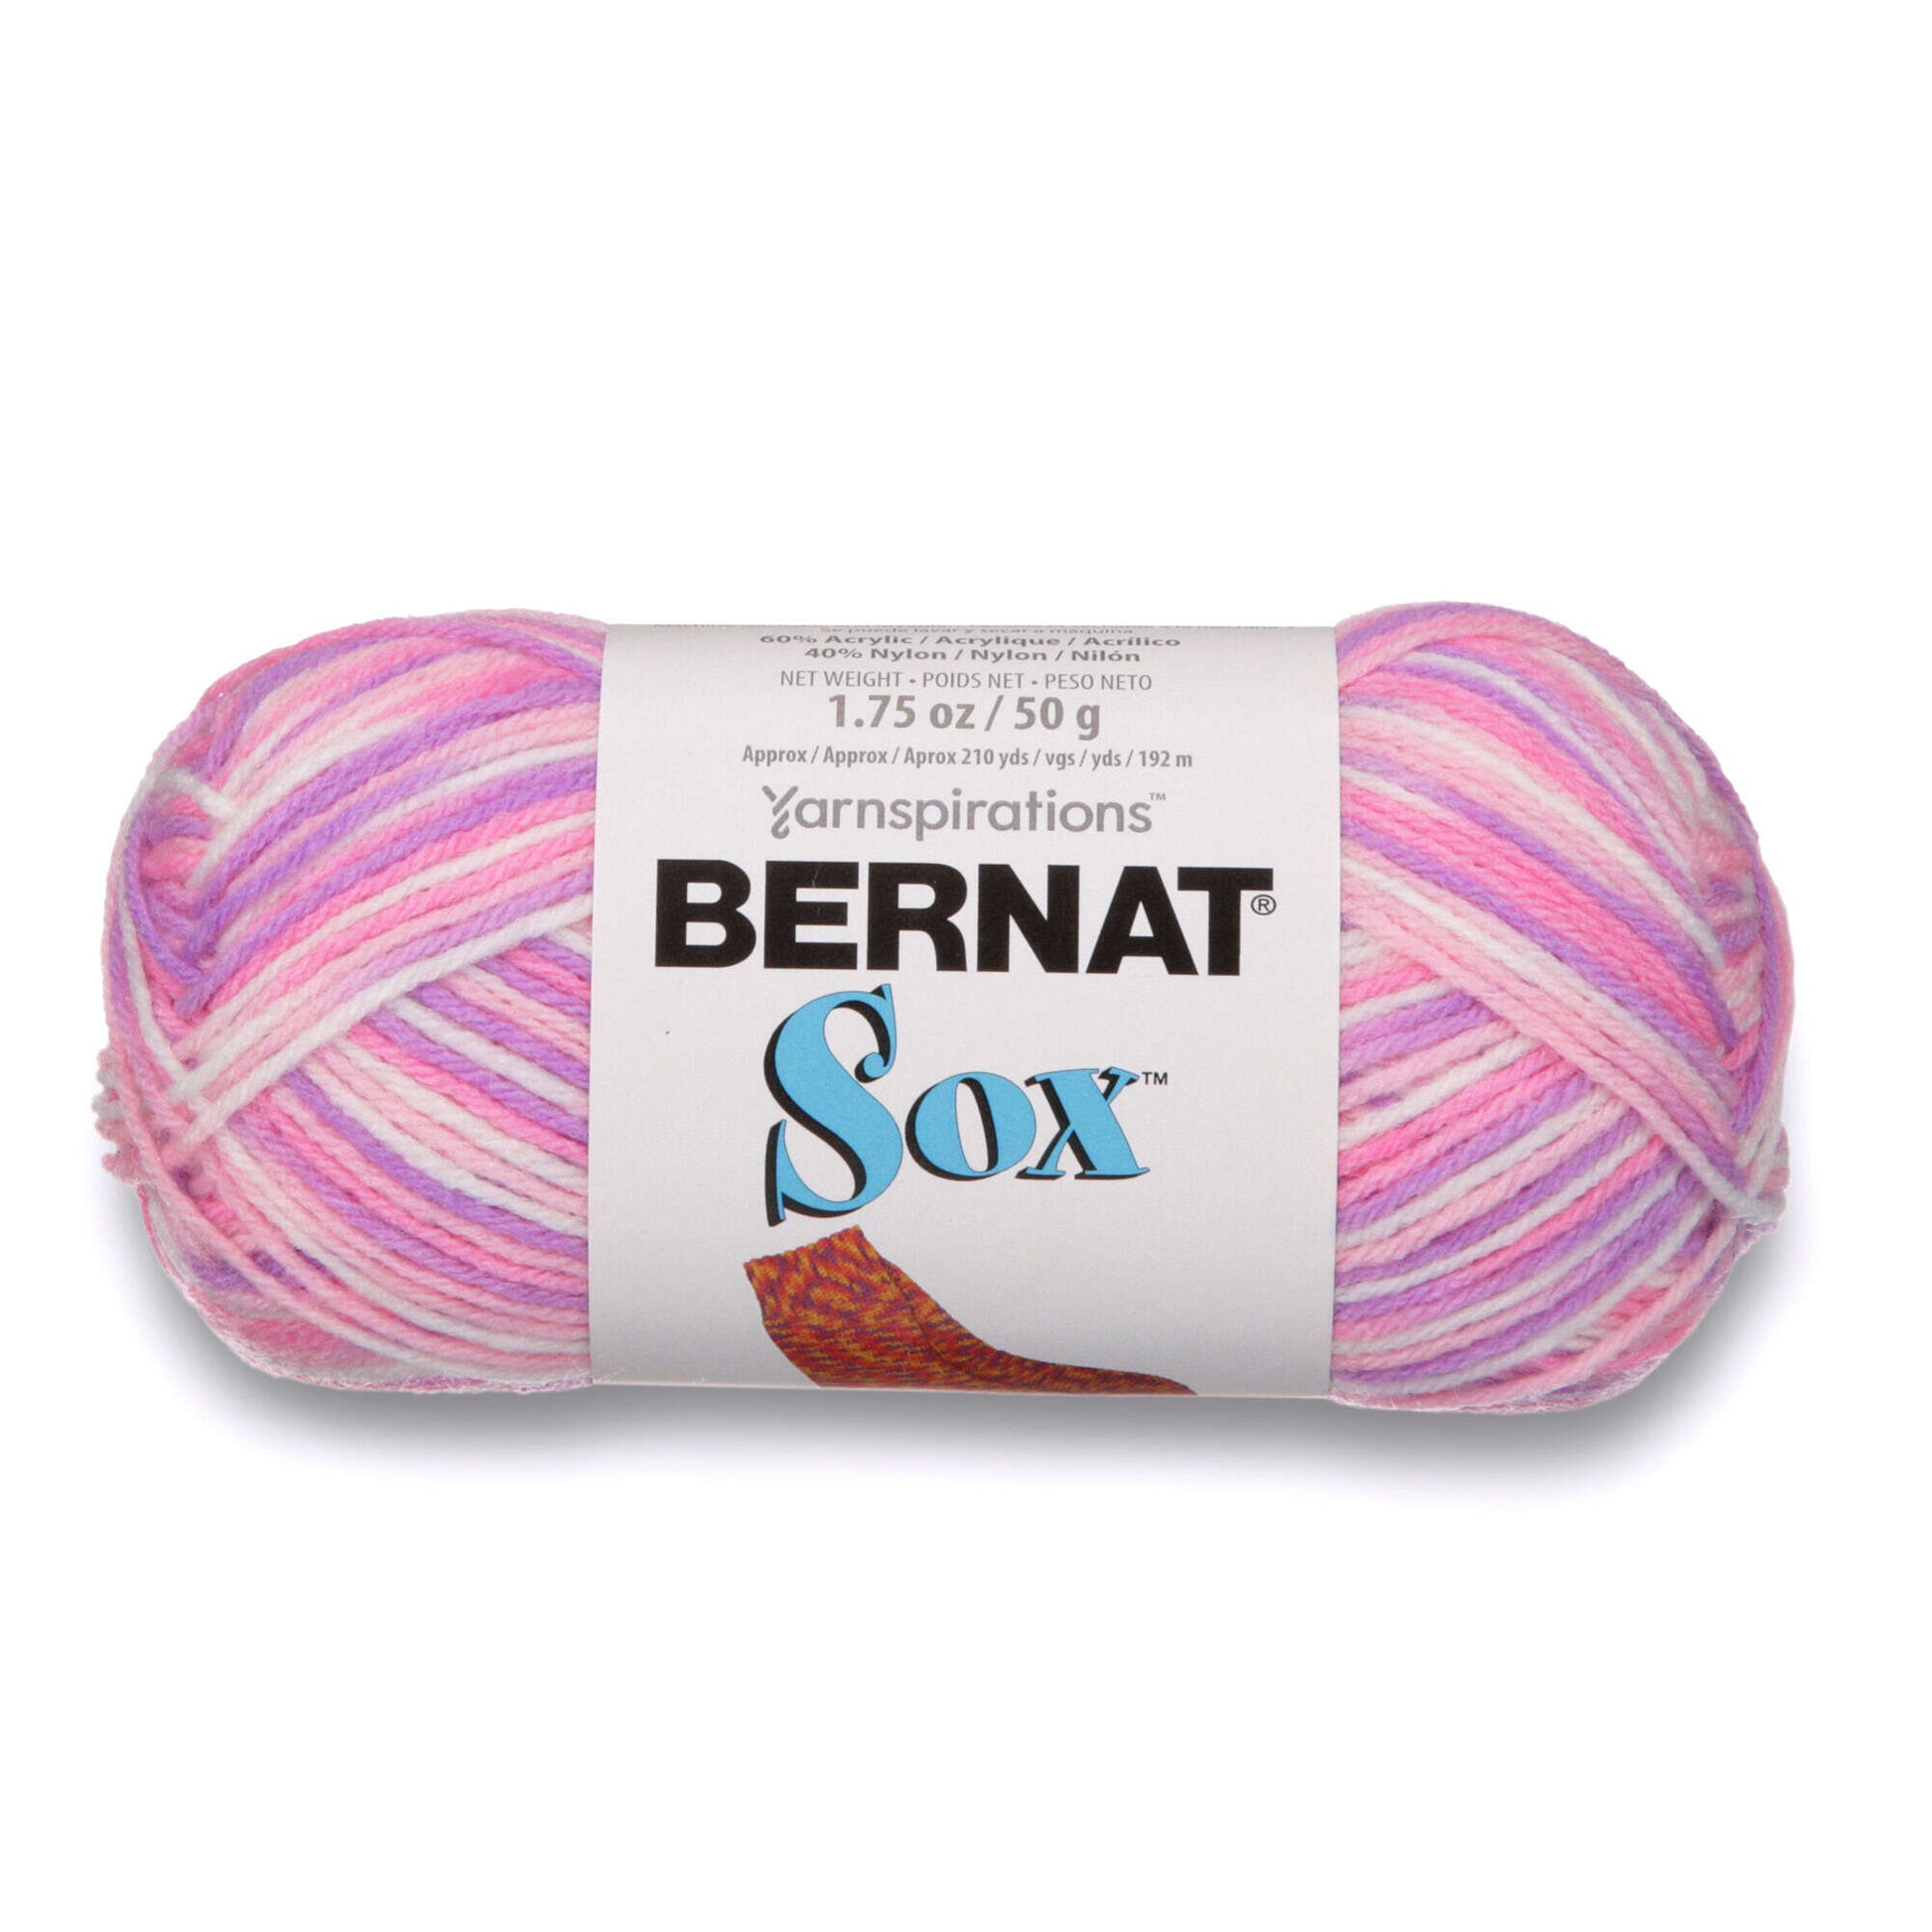 Bernat Sox Yarn - Discontinued Shades